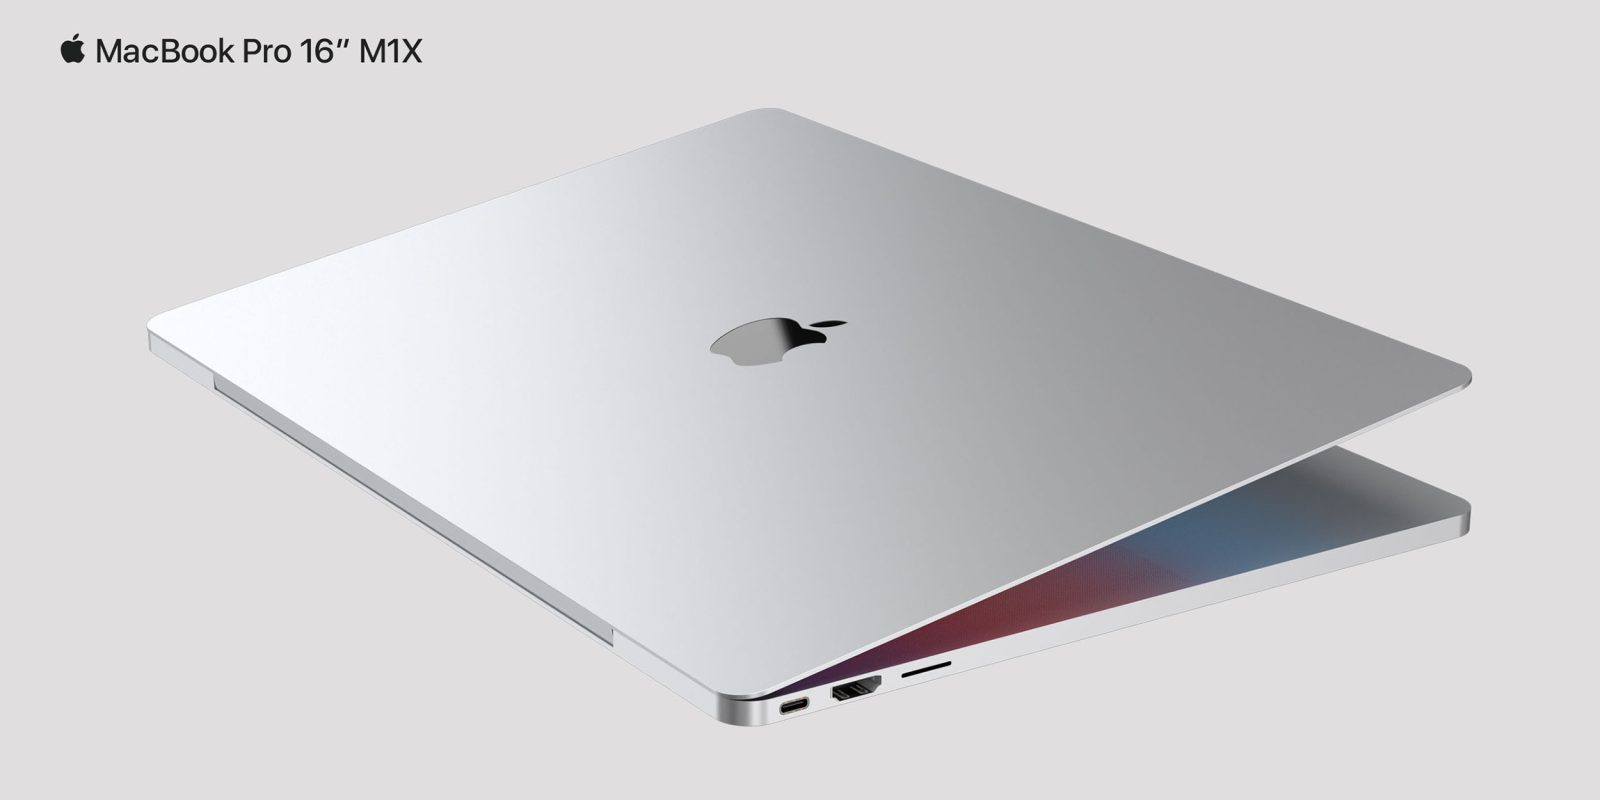 M1X 16-inch MacBook Pro render